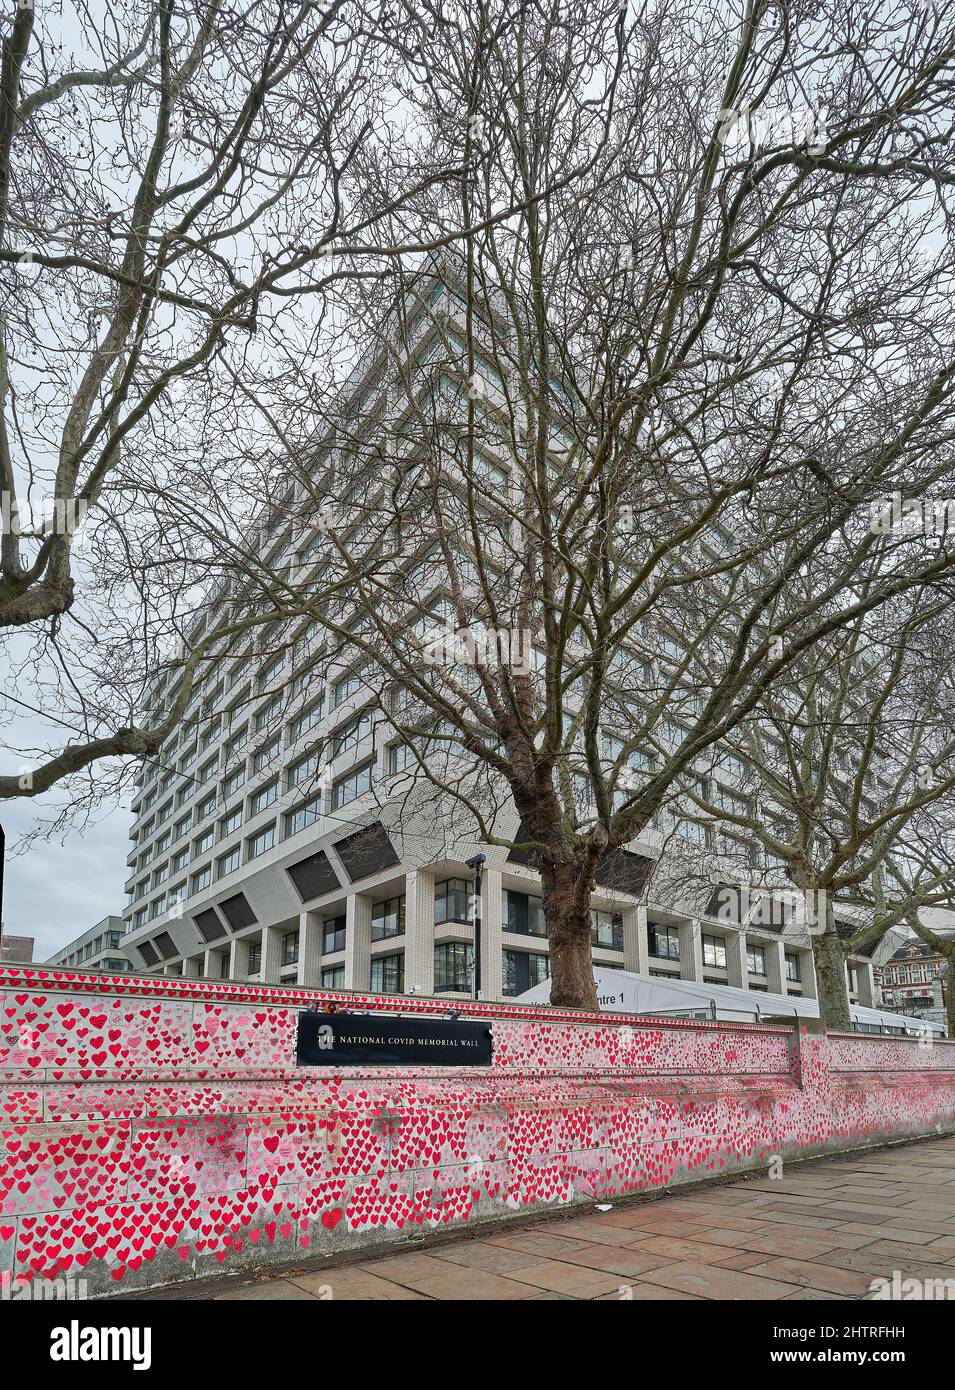 Il muro commemorativo del National Covid fuori dall'ospedale NHS di St Thomas, sulla riva del Tamigi, Londra, Inghilterra. Foto Stock